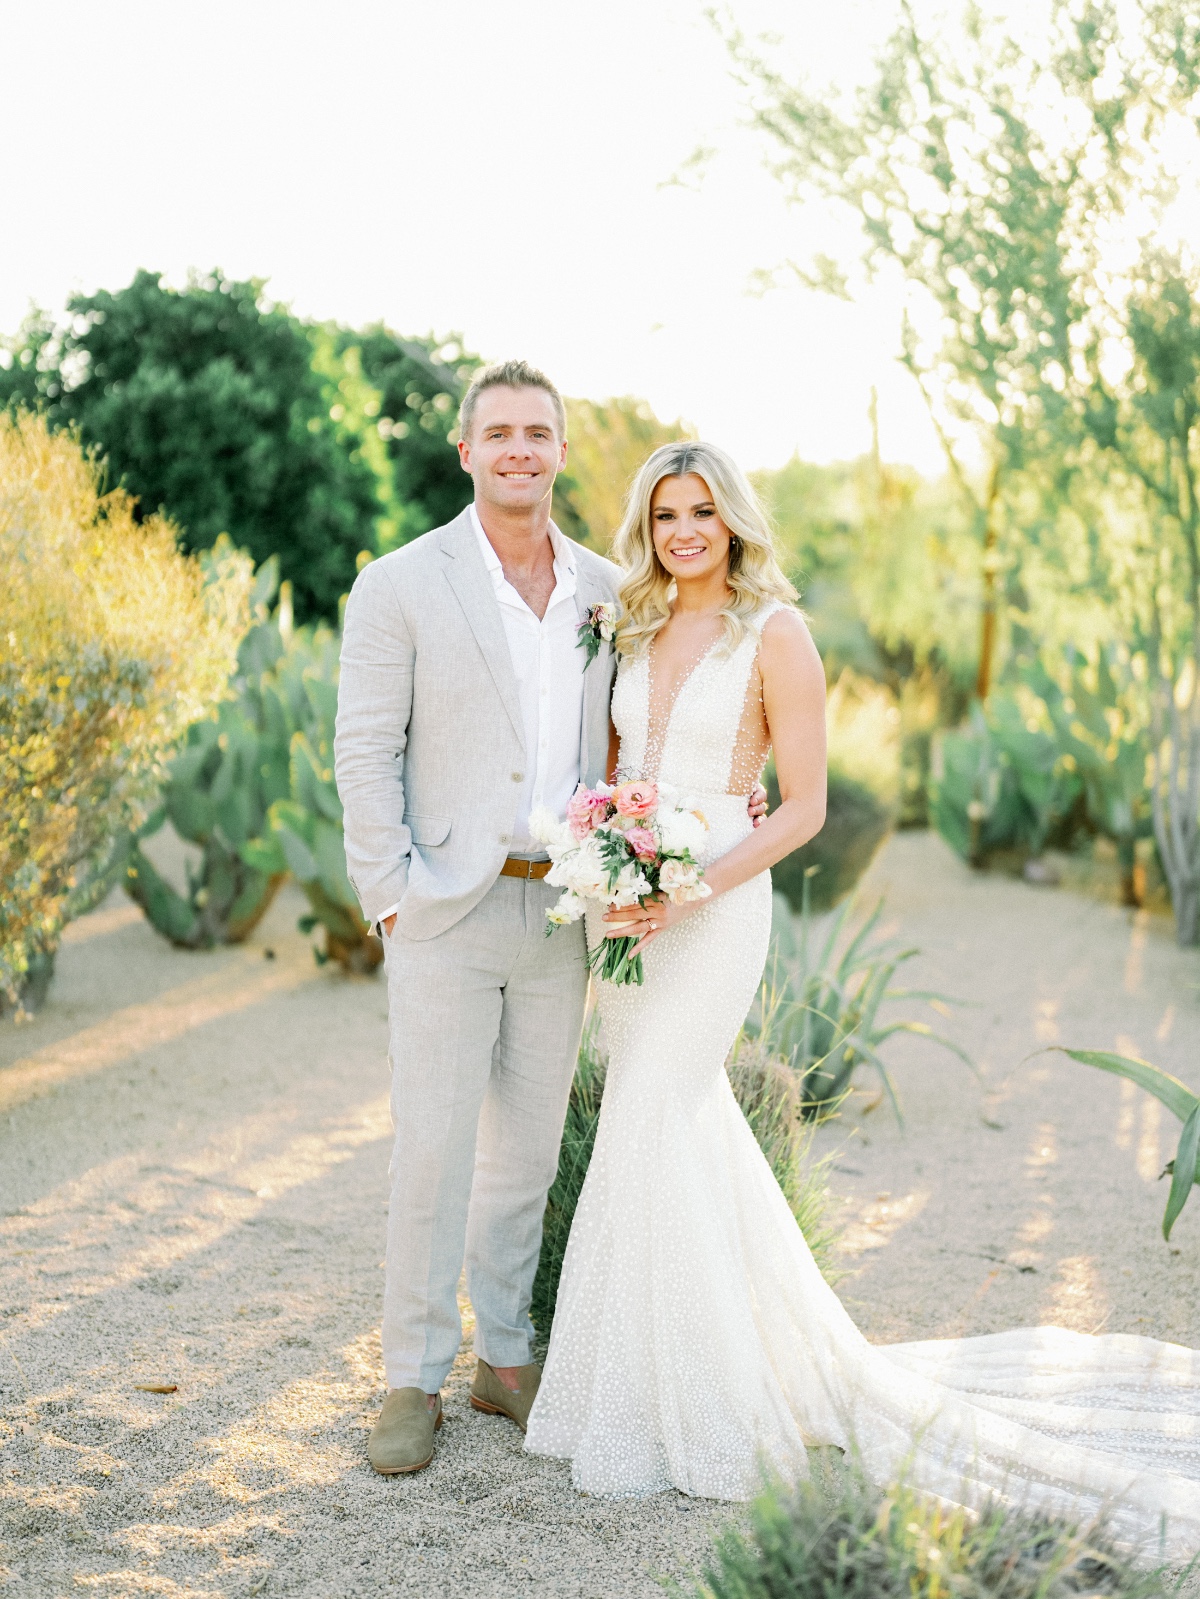 A modern Arizona desert wedding draped in pastel blooms